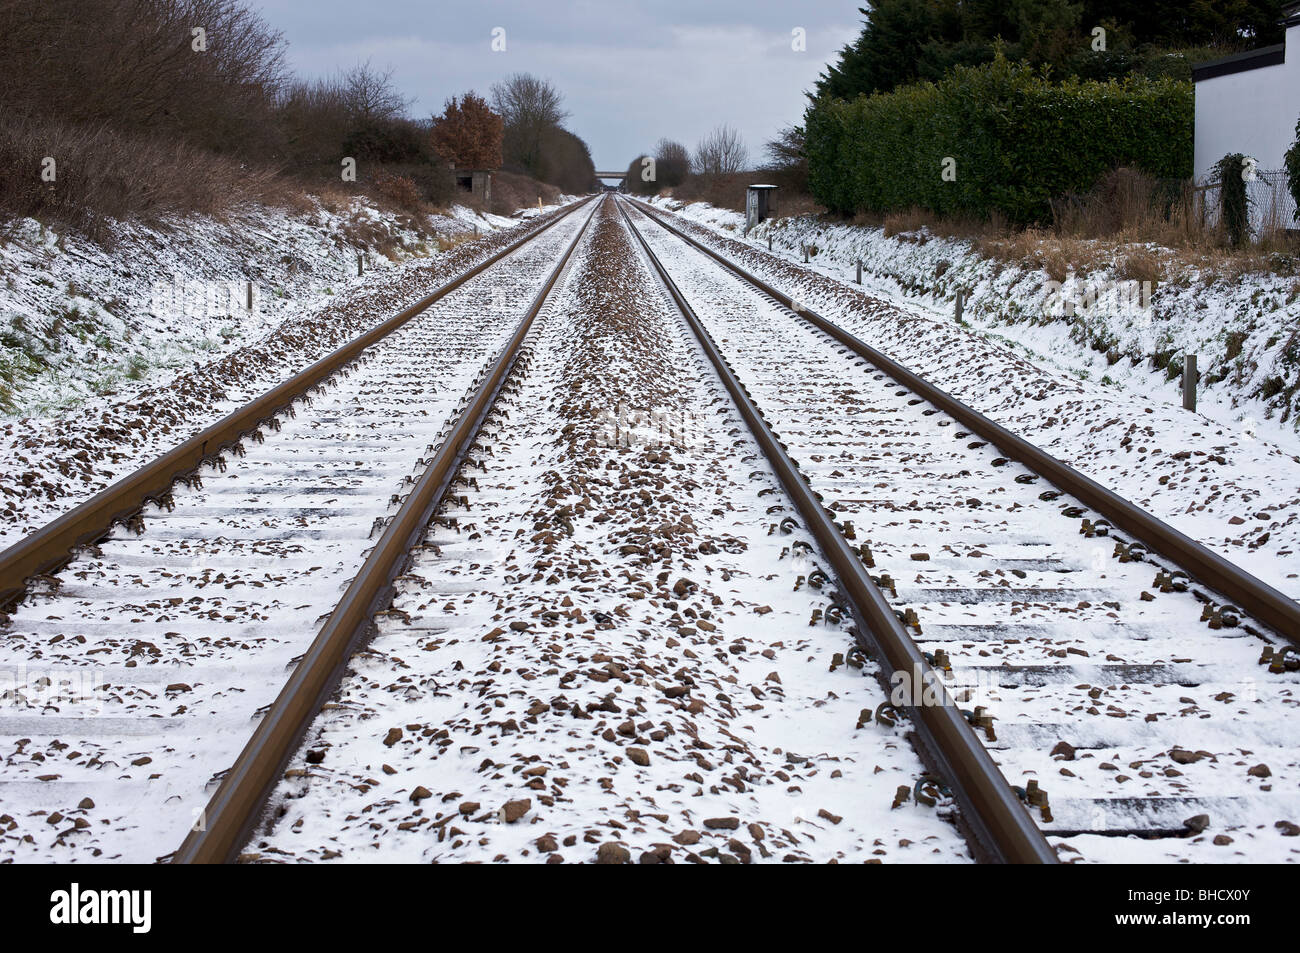 Train track in snow Stock Photo